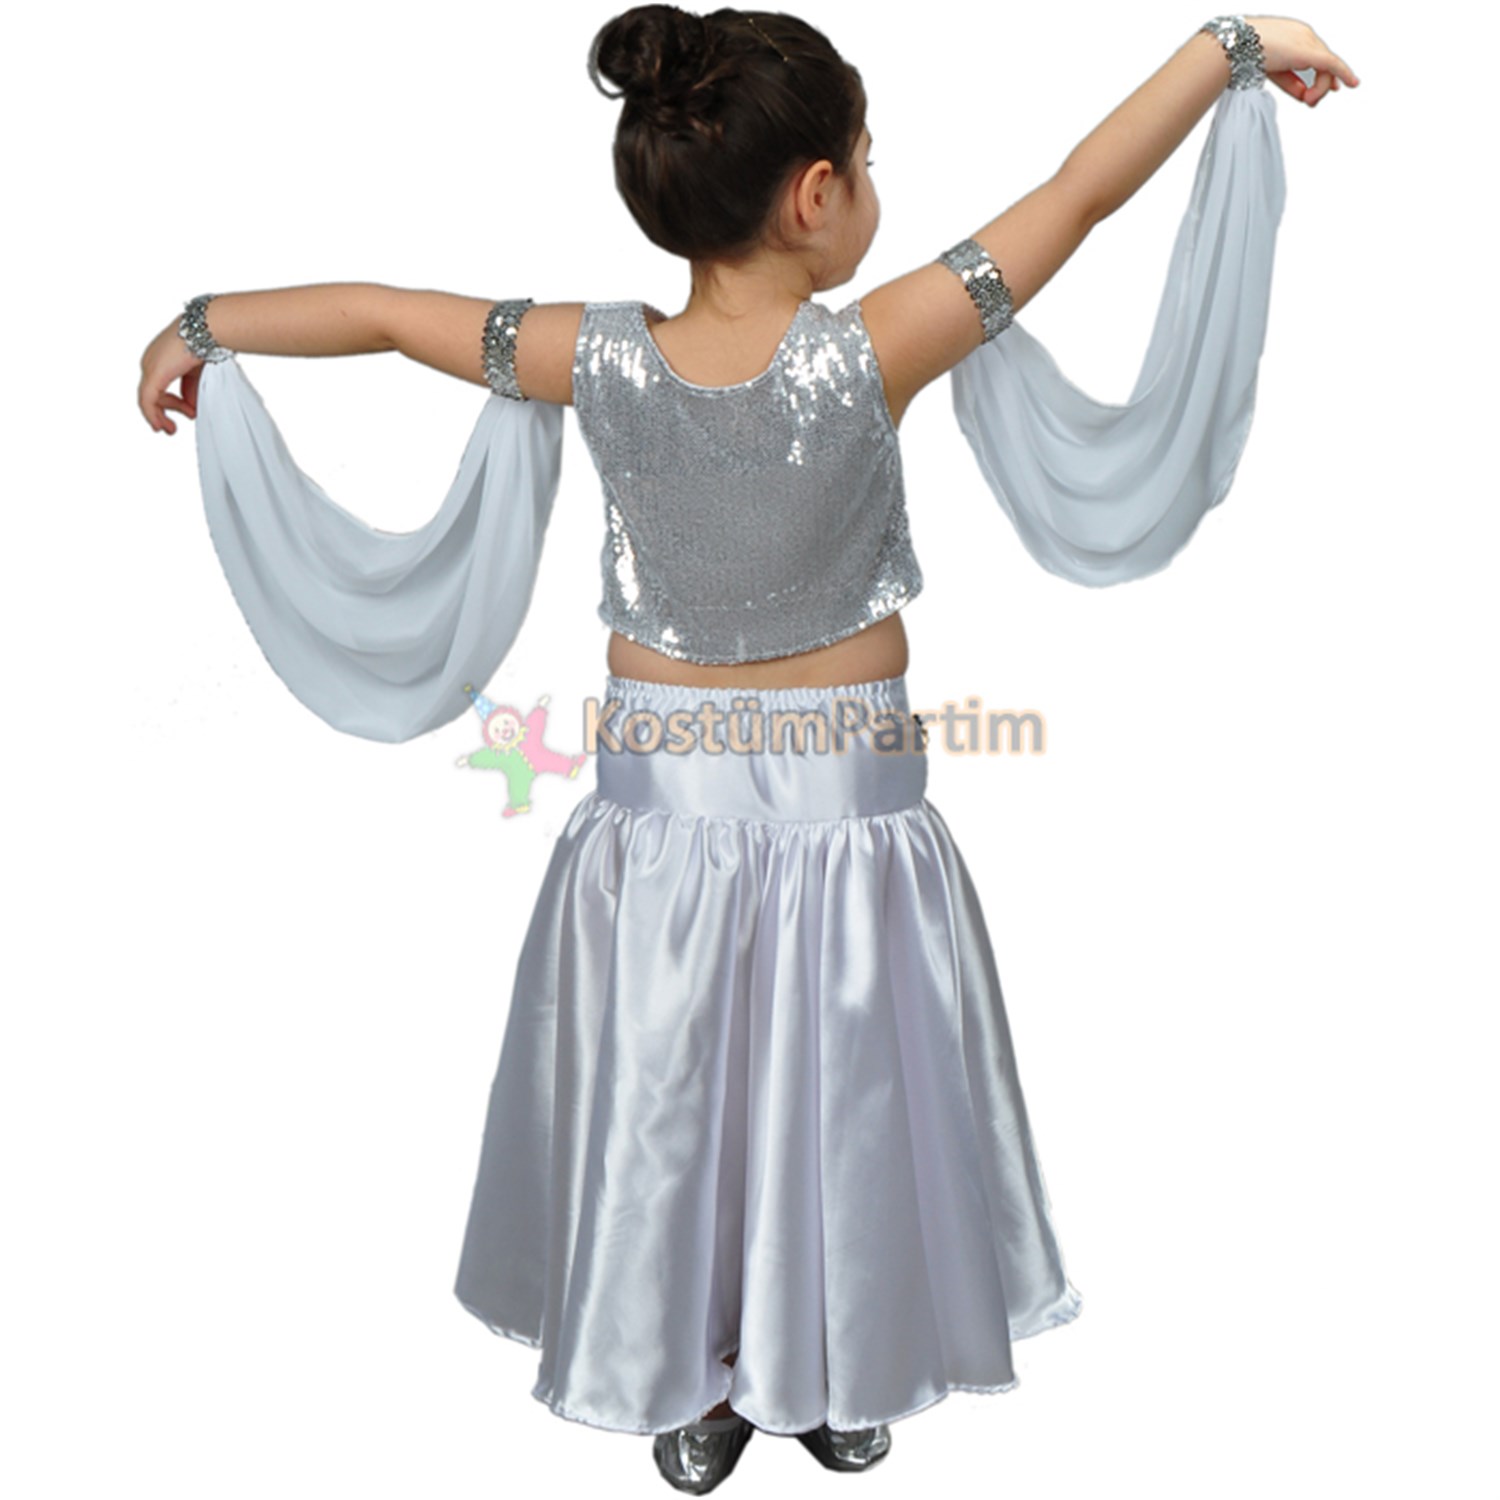 Modern Dans Kıyafeti Gümüş Kız Çocuk - KostümPartim®